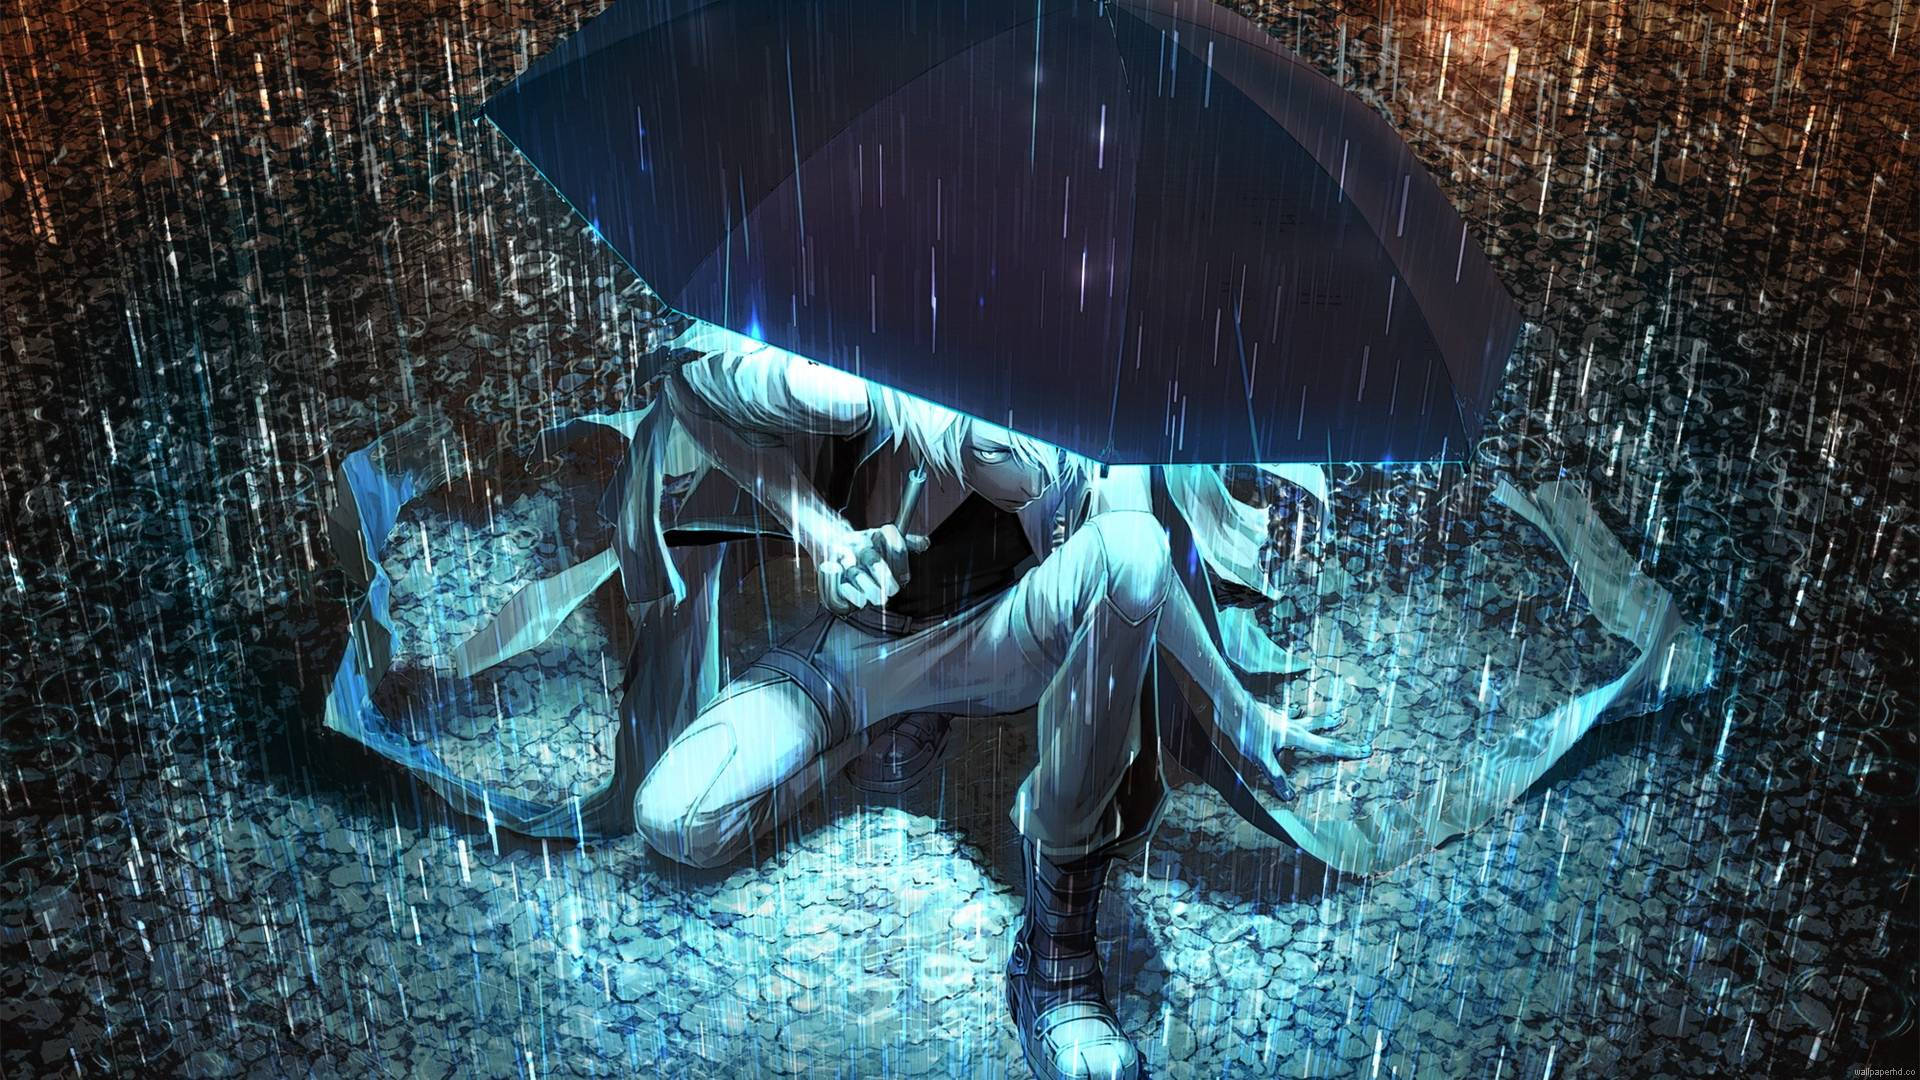 A young anime boy using an umbrella in the rain Wallpaper